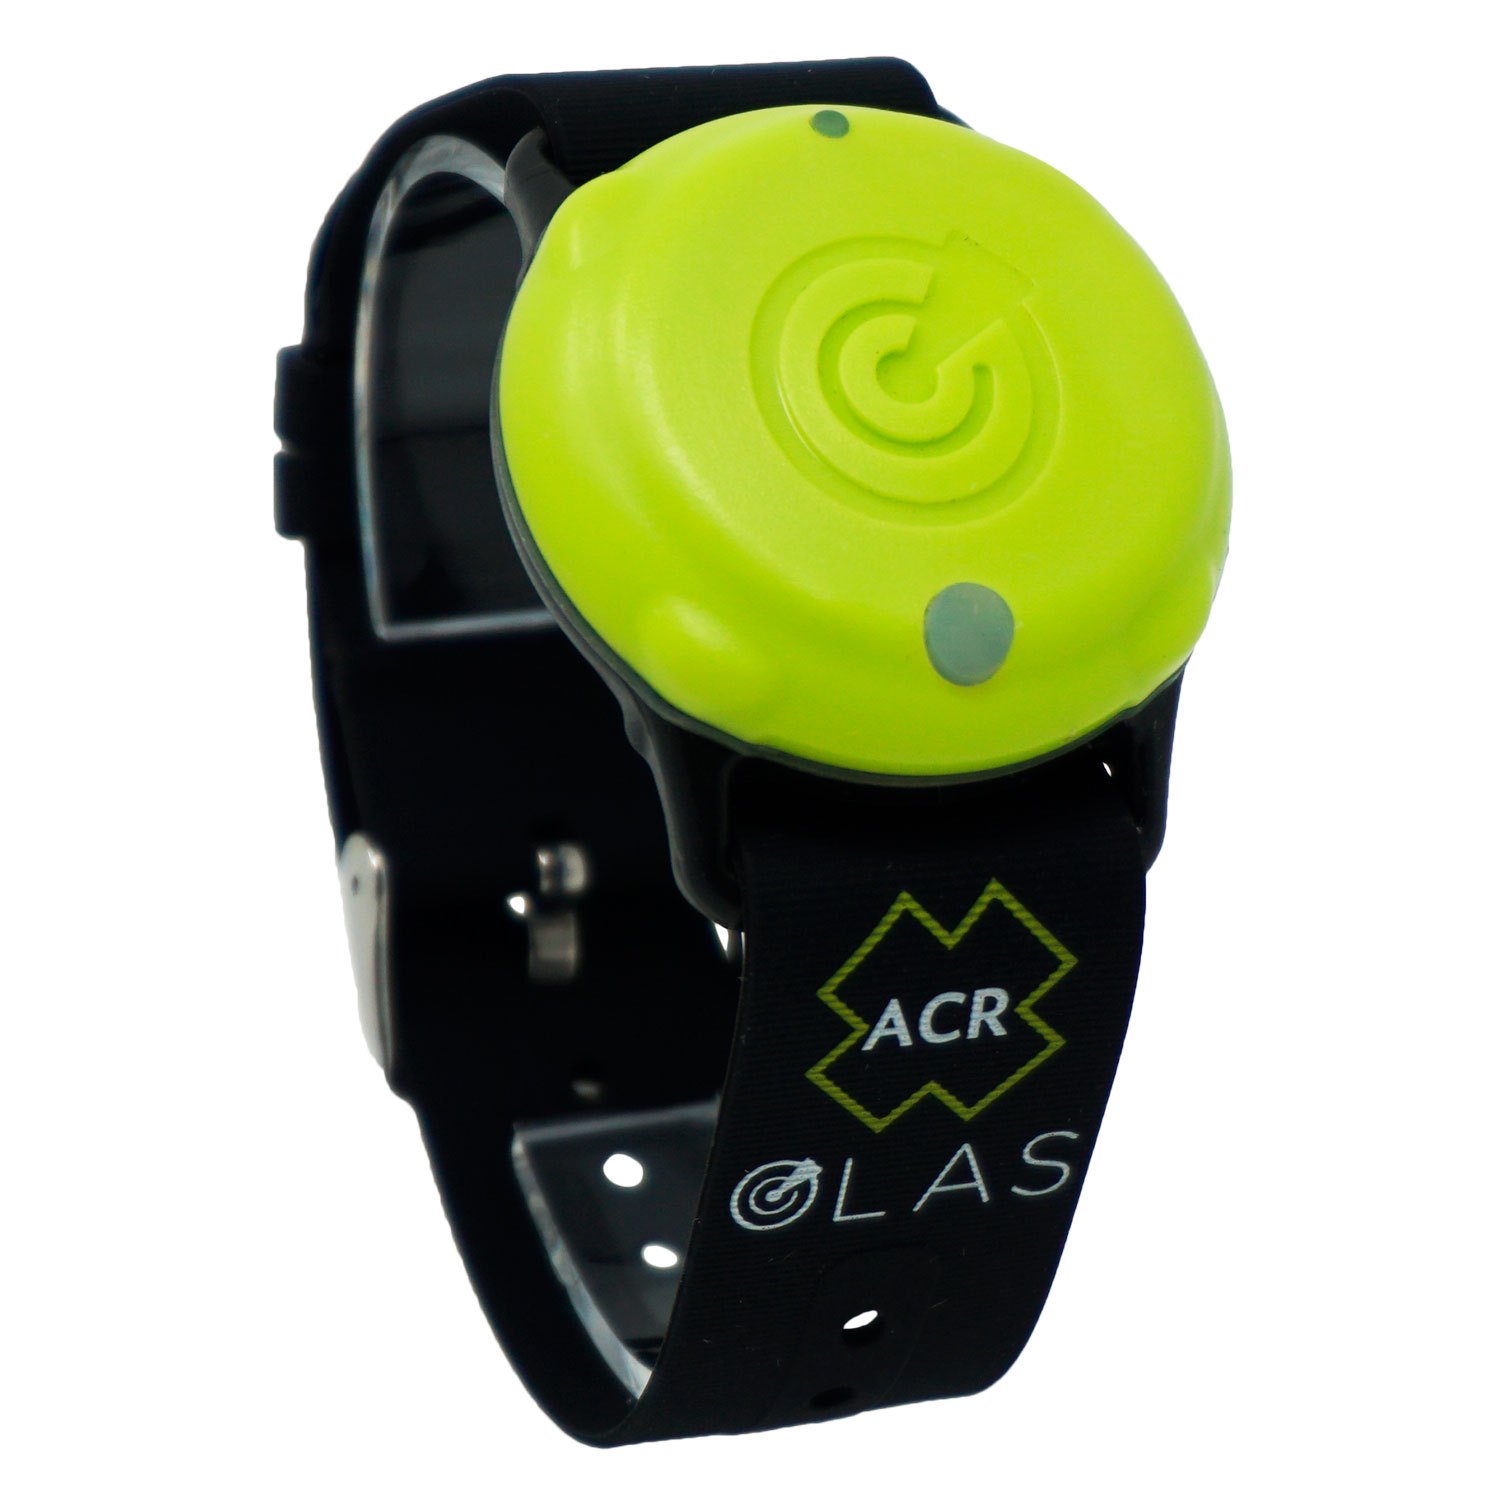 ACR® 2980 - OLAS Tag Wearable Crew Tracker